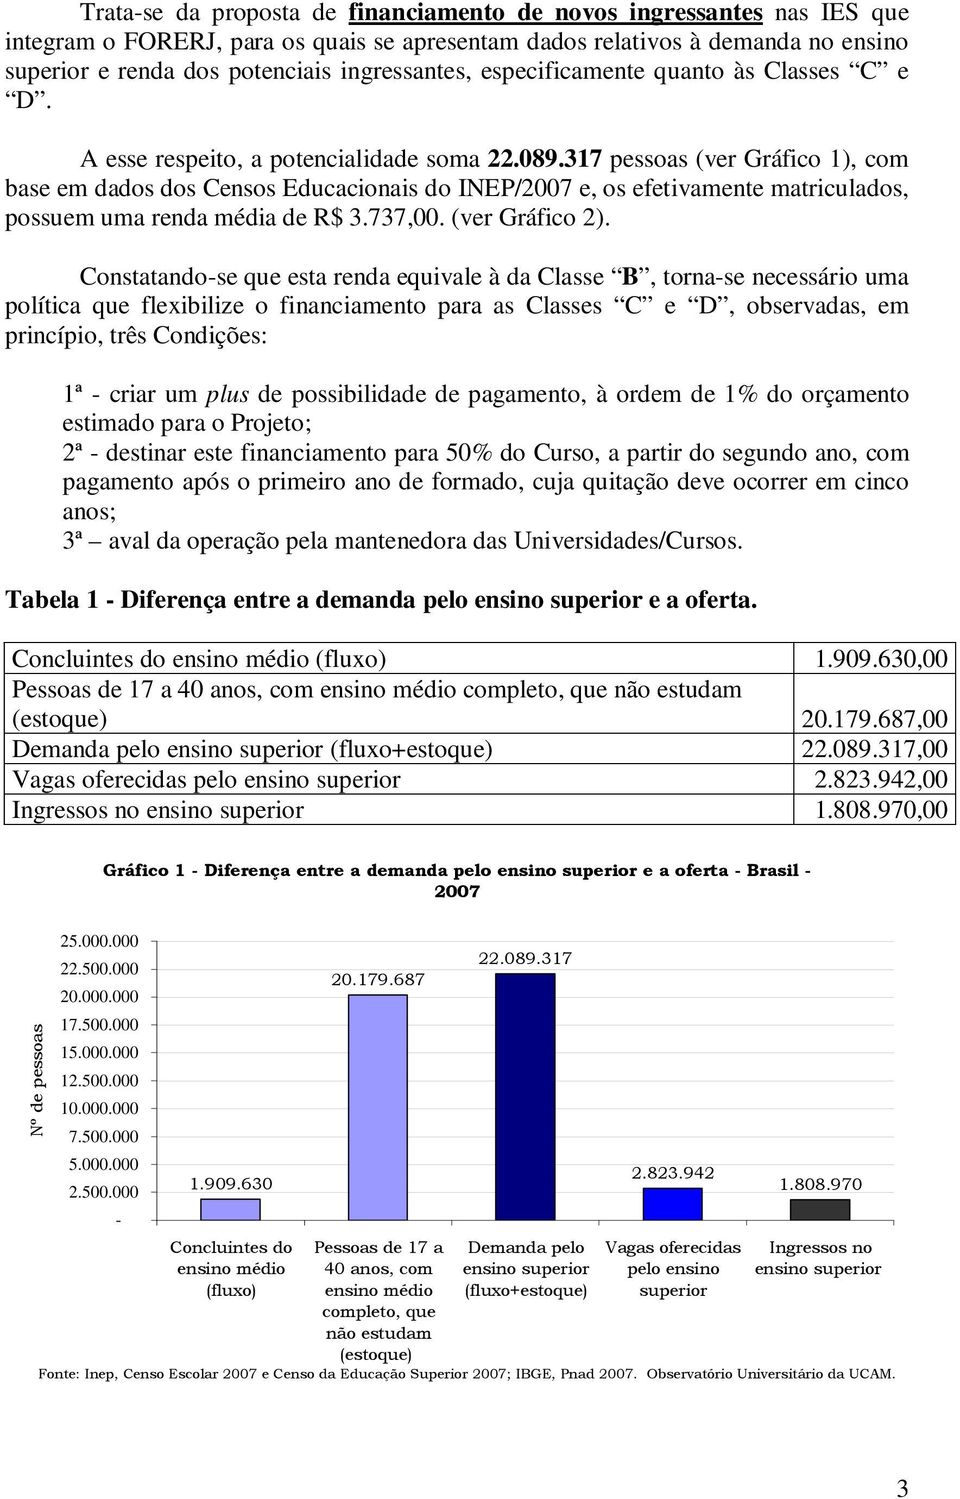 317 pessoas (ver Gráfico 1), com base em dados dos Censos Educacionais do INEP/2007 e, os efetivamente matriculados, possuem uma renda média de R$ 3.737,00. (ver Gráfico 2).